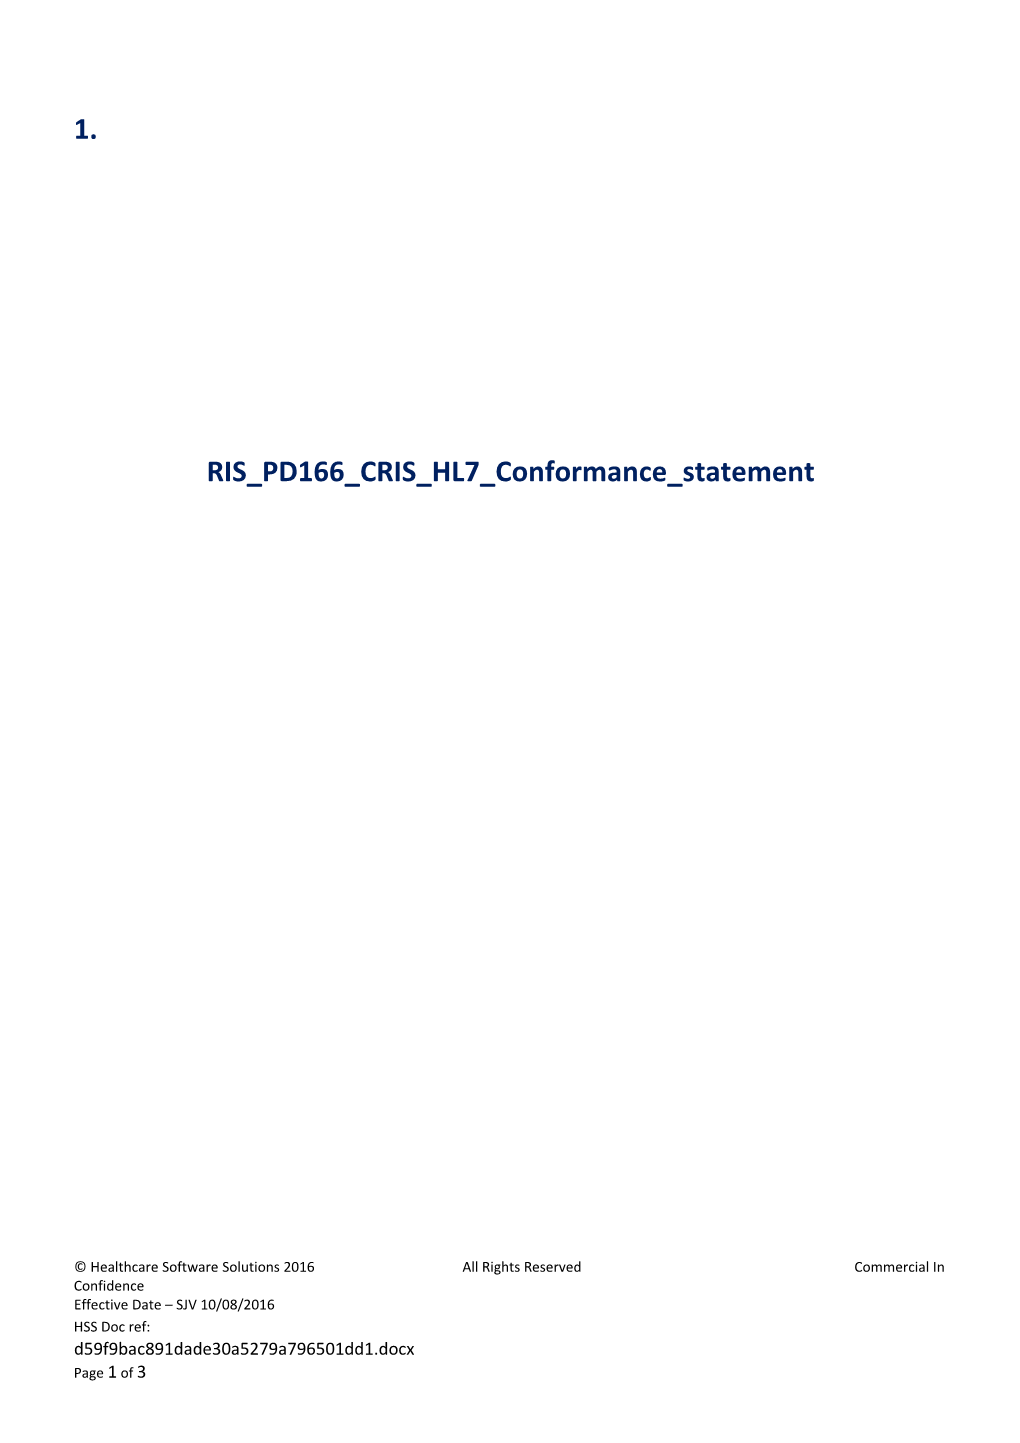 RIS PD166 CRIS HL7 Conformance Statement